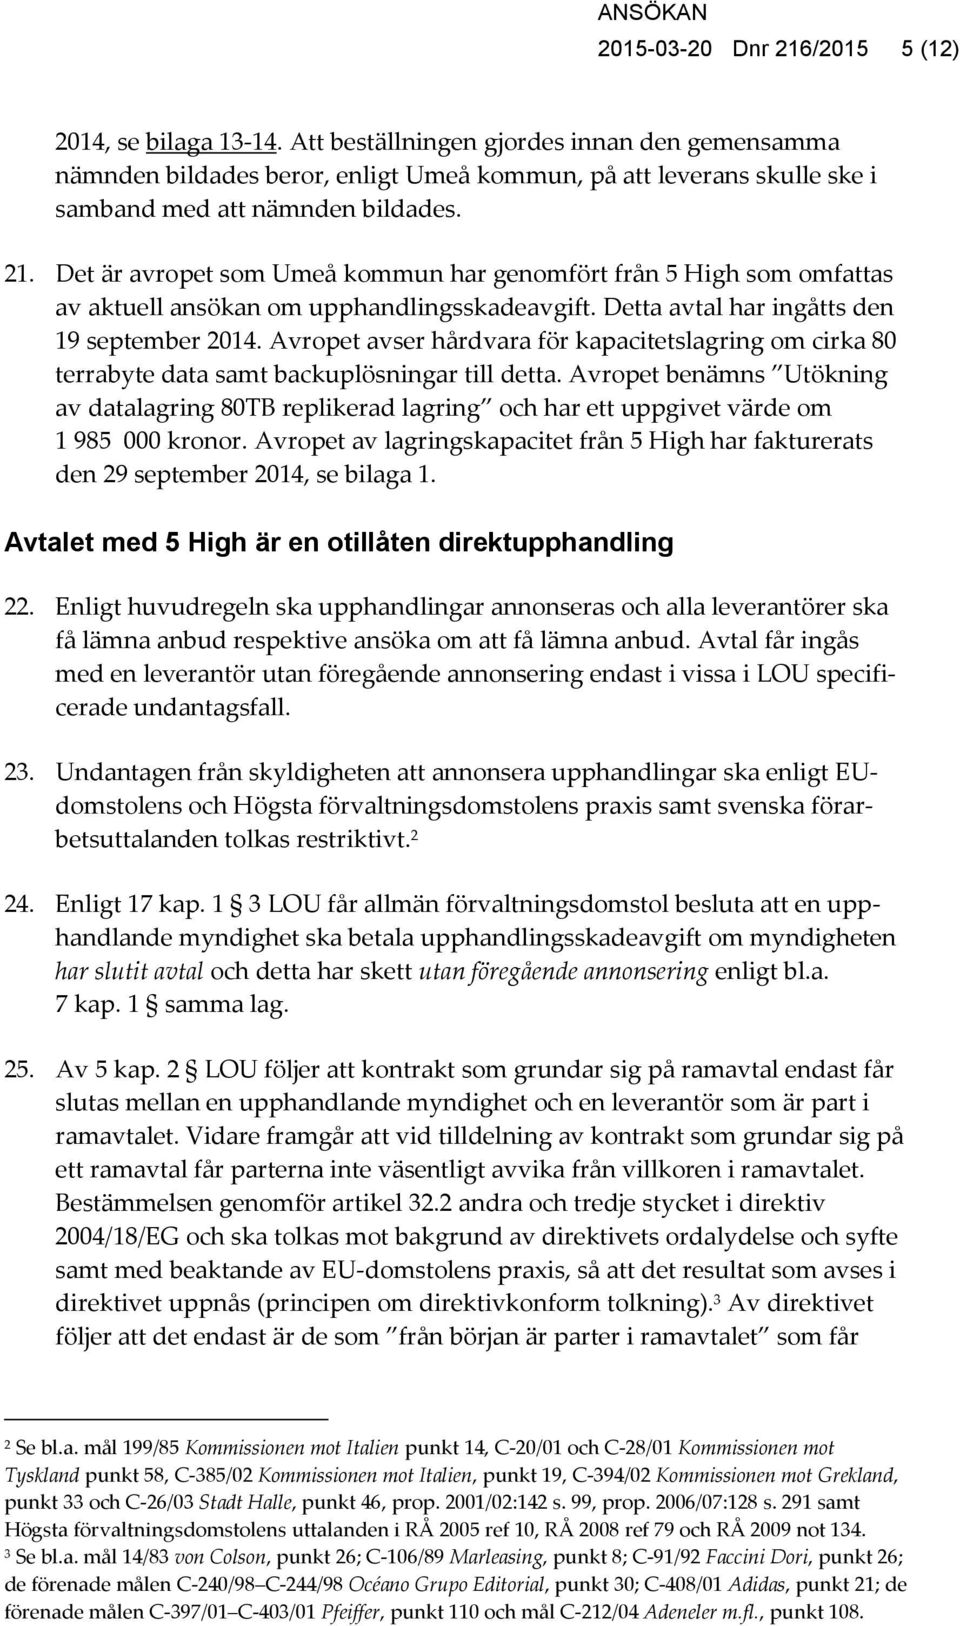 Det är avropet som Umeå kommun har genomfört från 5 High som omfattas av aktuell ansökan om upphandlingsskadeavgift. Detta avtal har ingåtts den 19 september 2014.